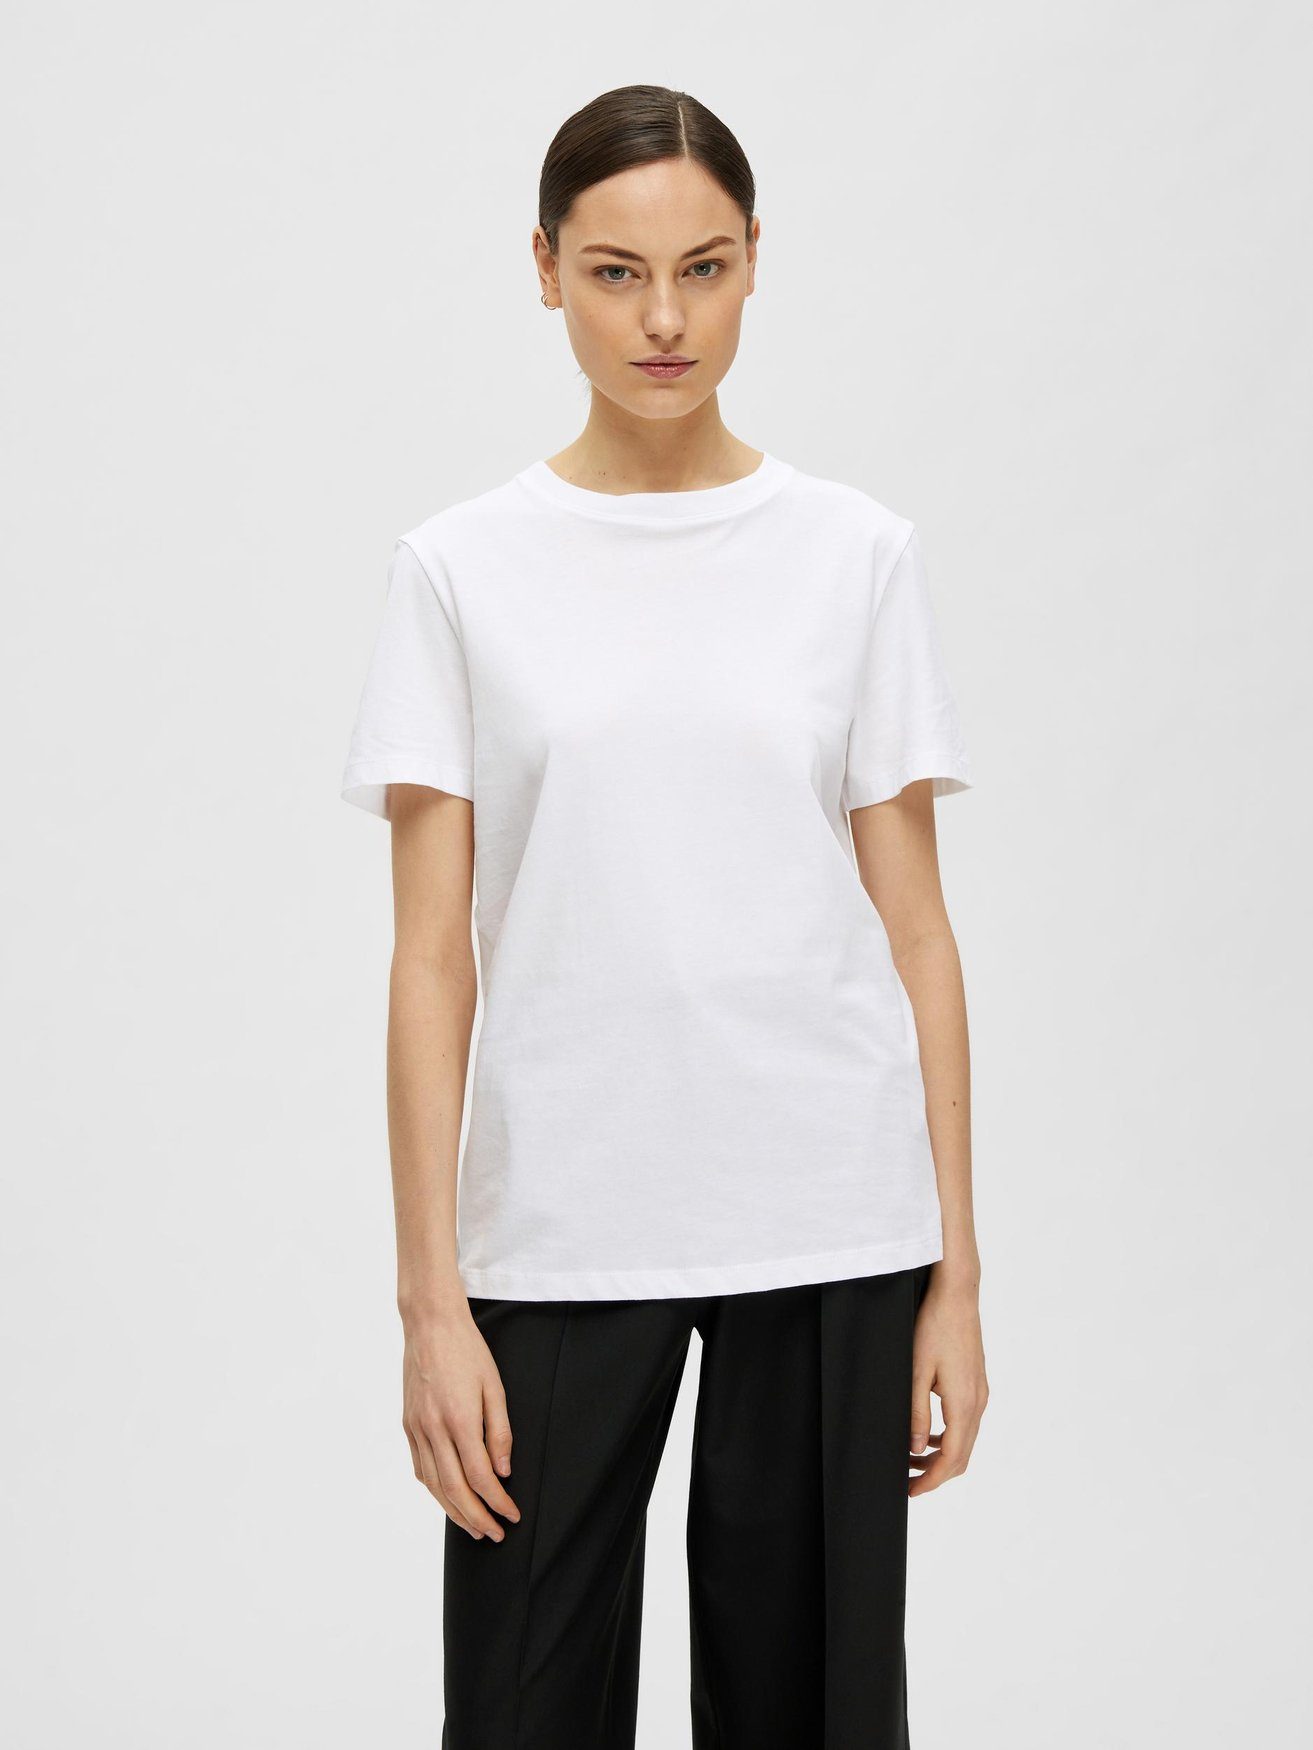 Dünnes 6075 in Weiß-2 Shirt SELECTED FEMME Basic SLFMYESSENTIAL T-Shirt Kurzarm